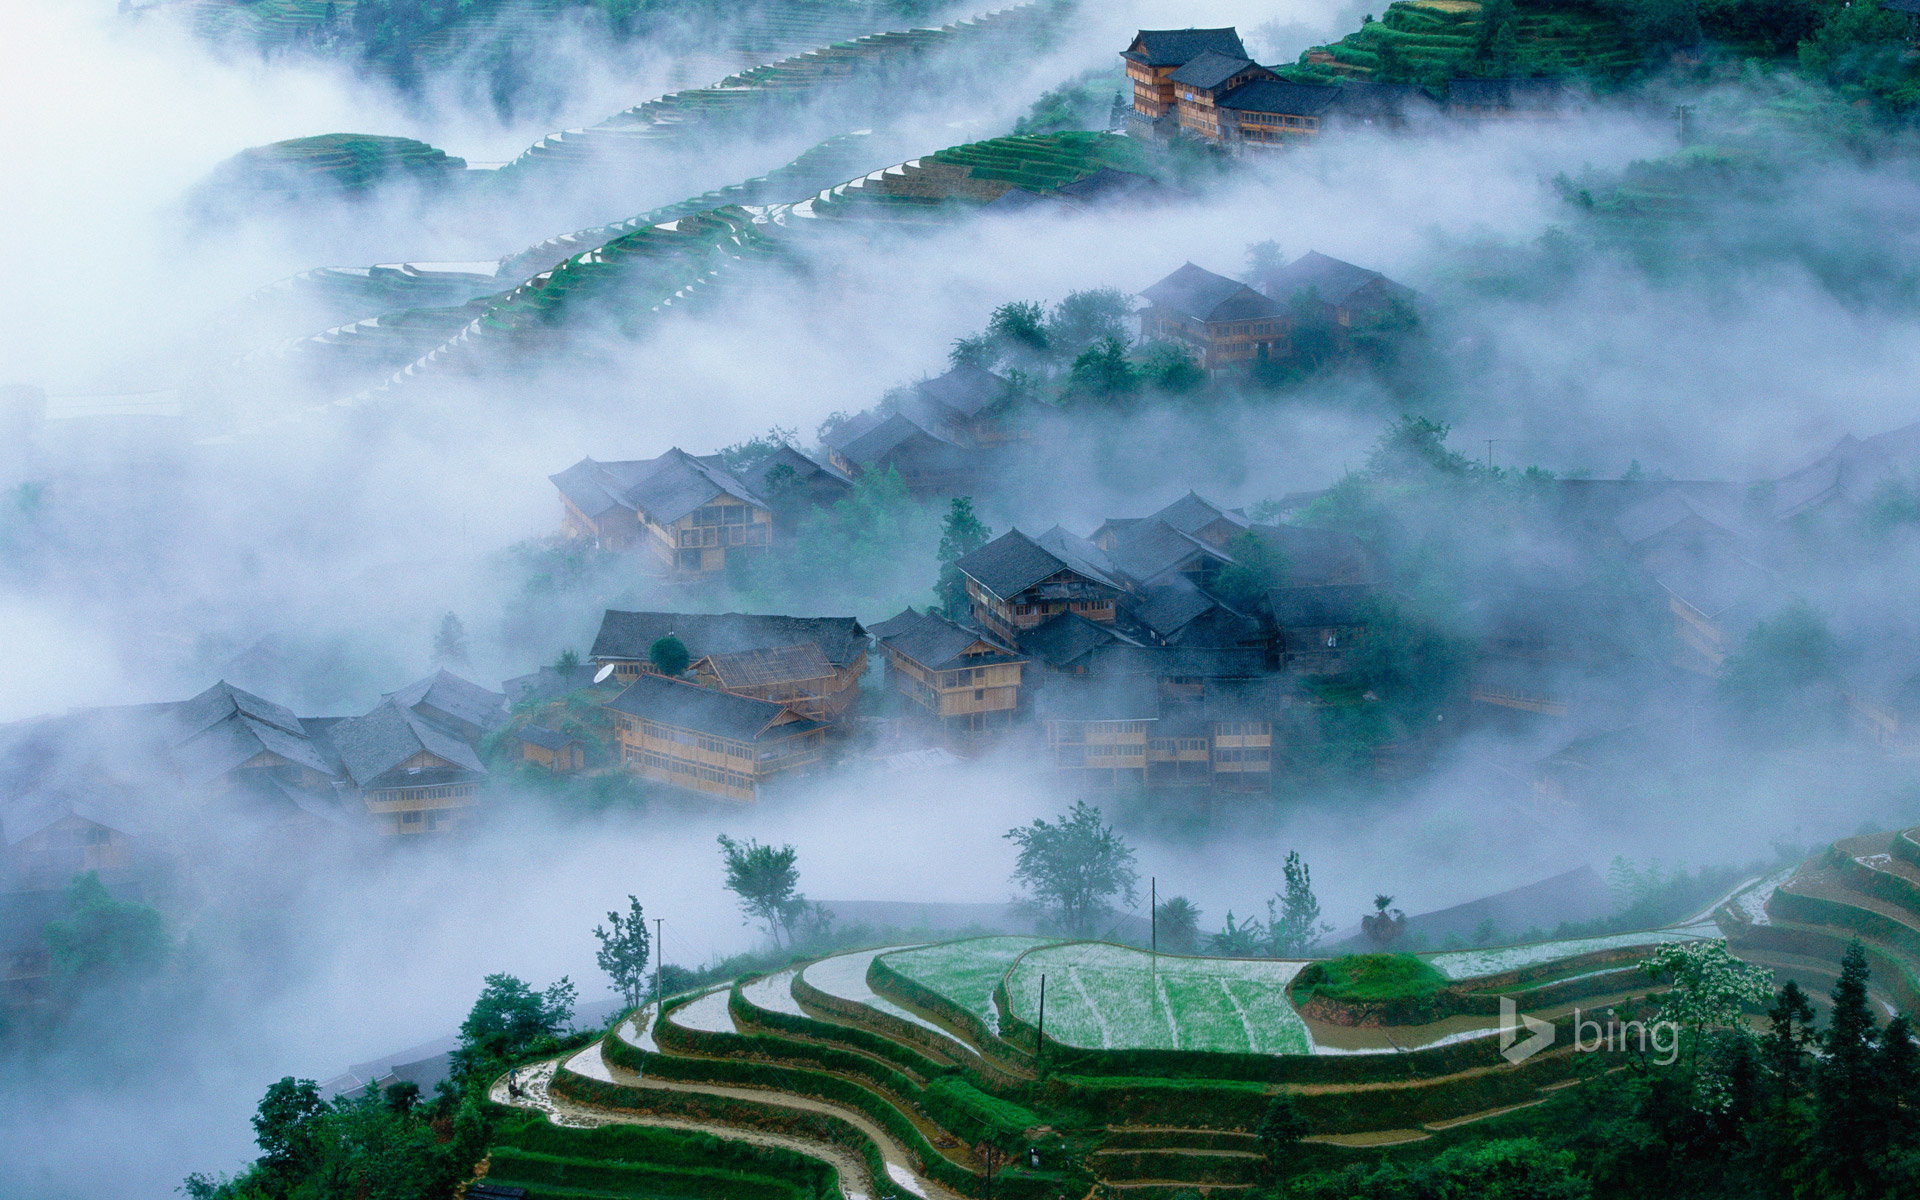 Longsheng rice terraces, Guangxi, China